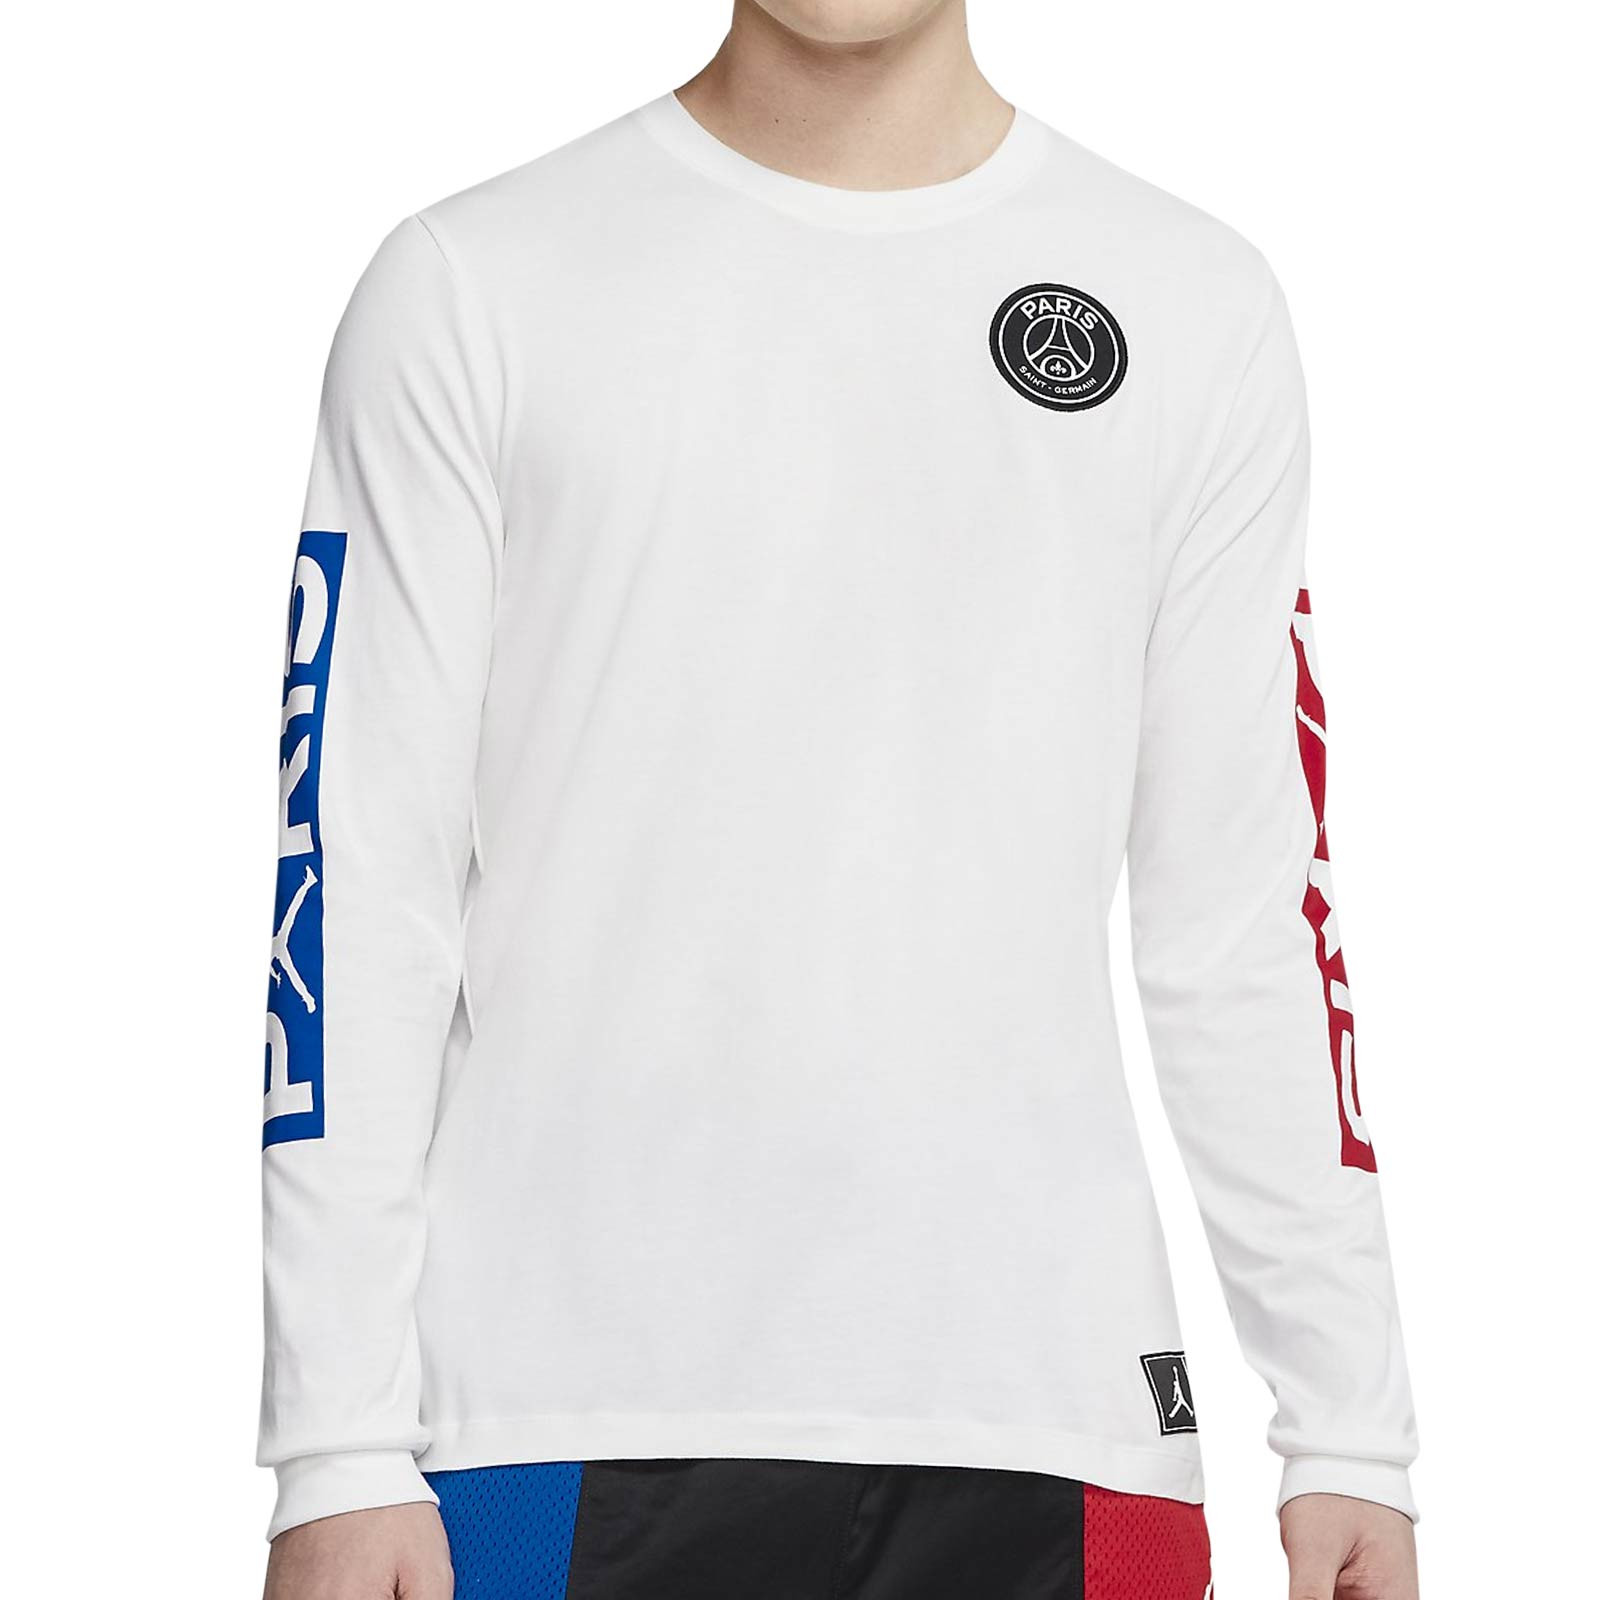 Camiseta manga larga Nike PSG x Jordan blanca |futbolmania